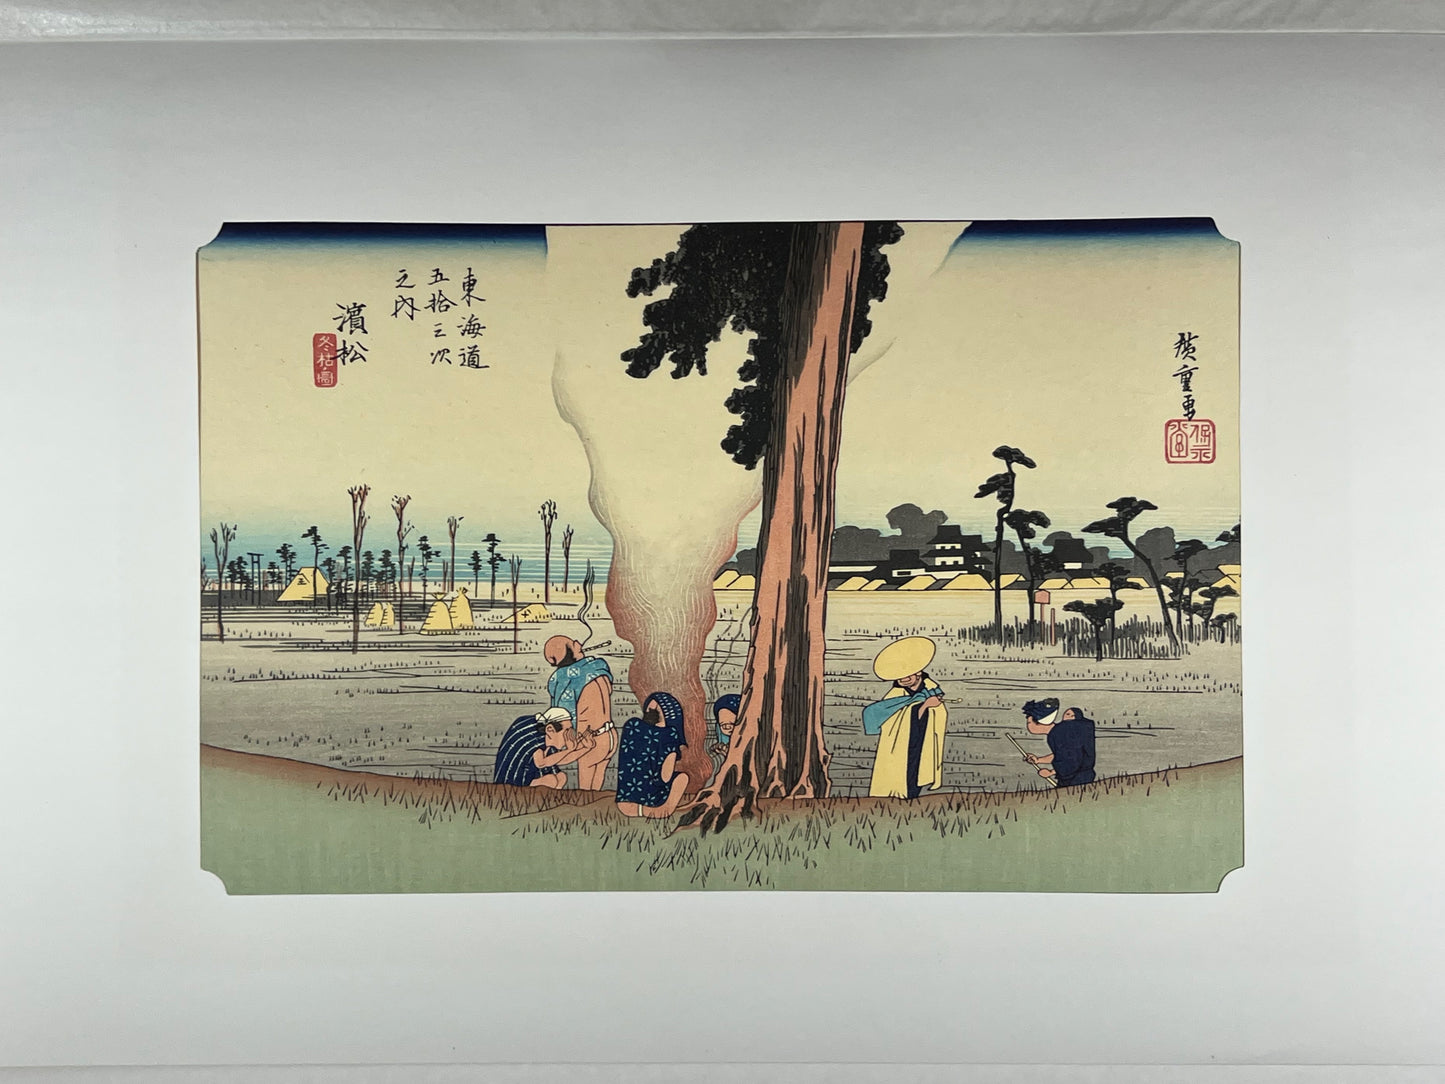 estampe japonaise de hiroshige grand tokaido des voyageurs font halte sous un pin, avec passe-partout d'origine